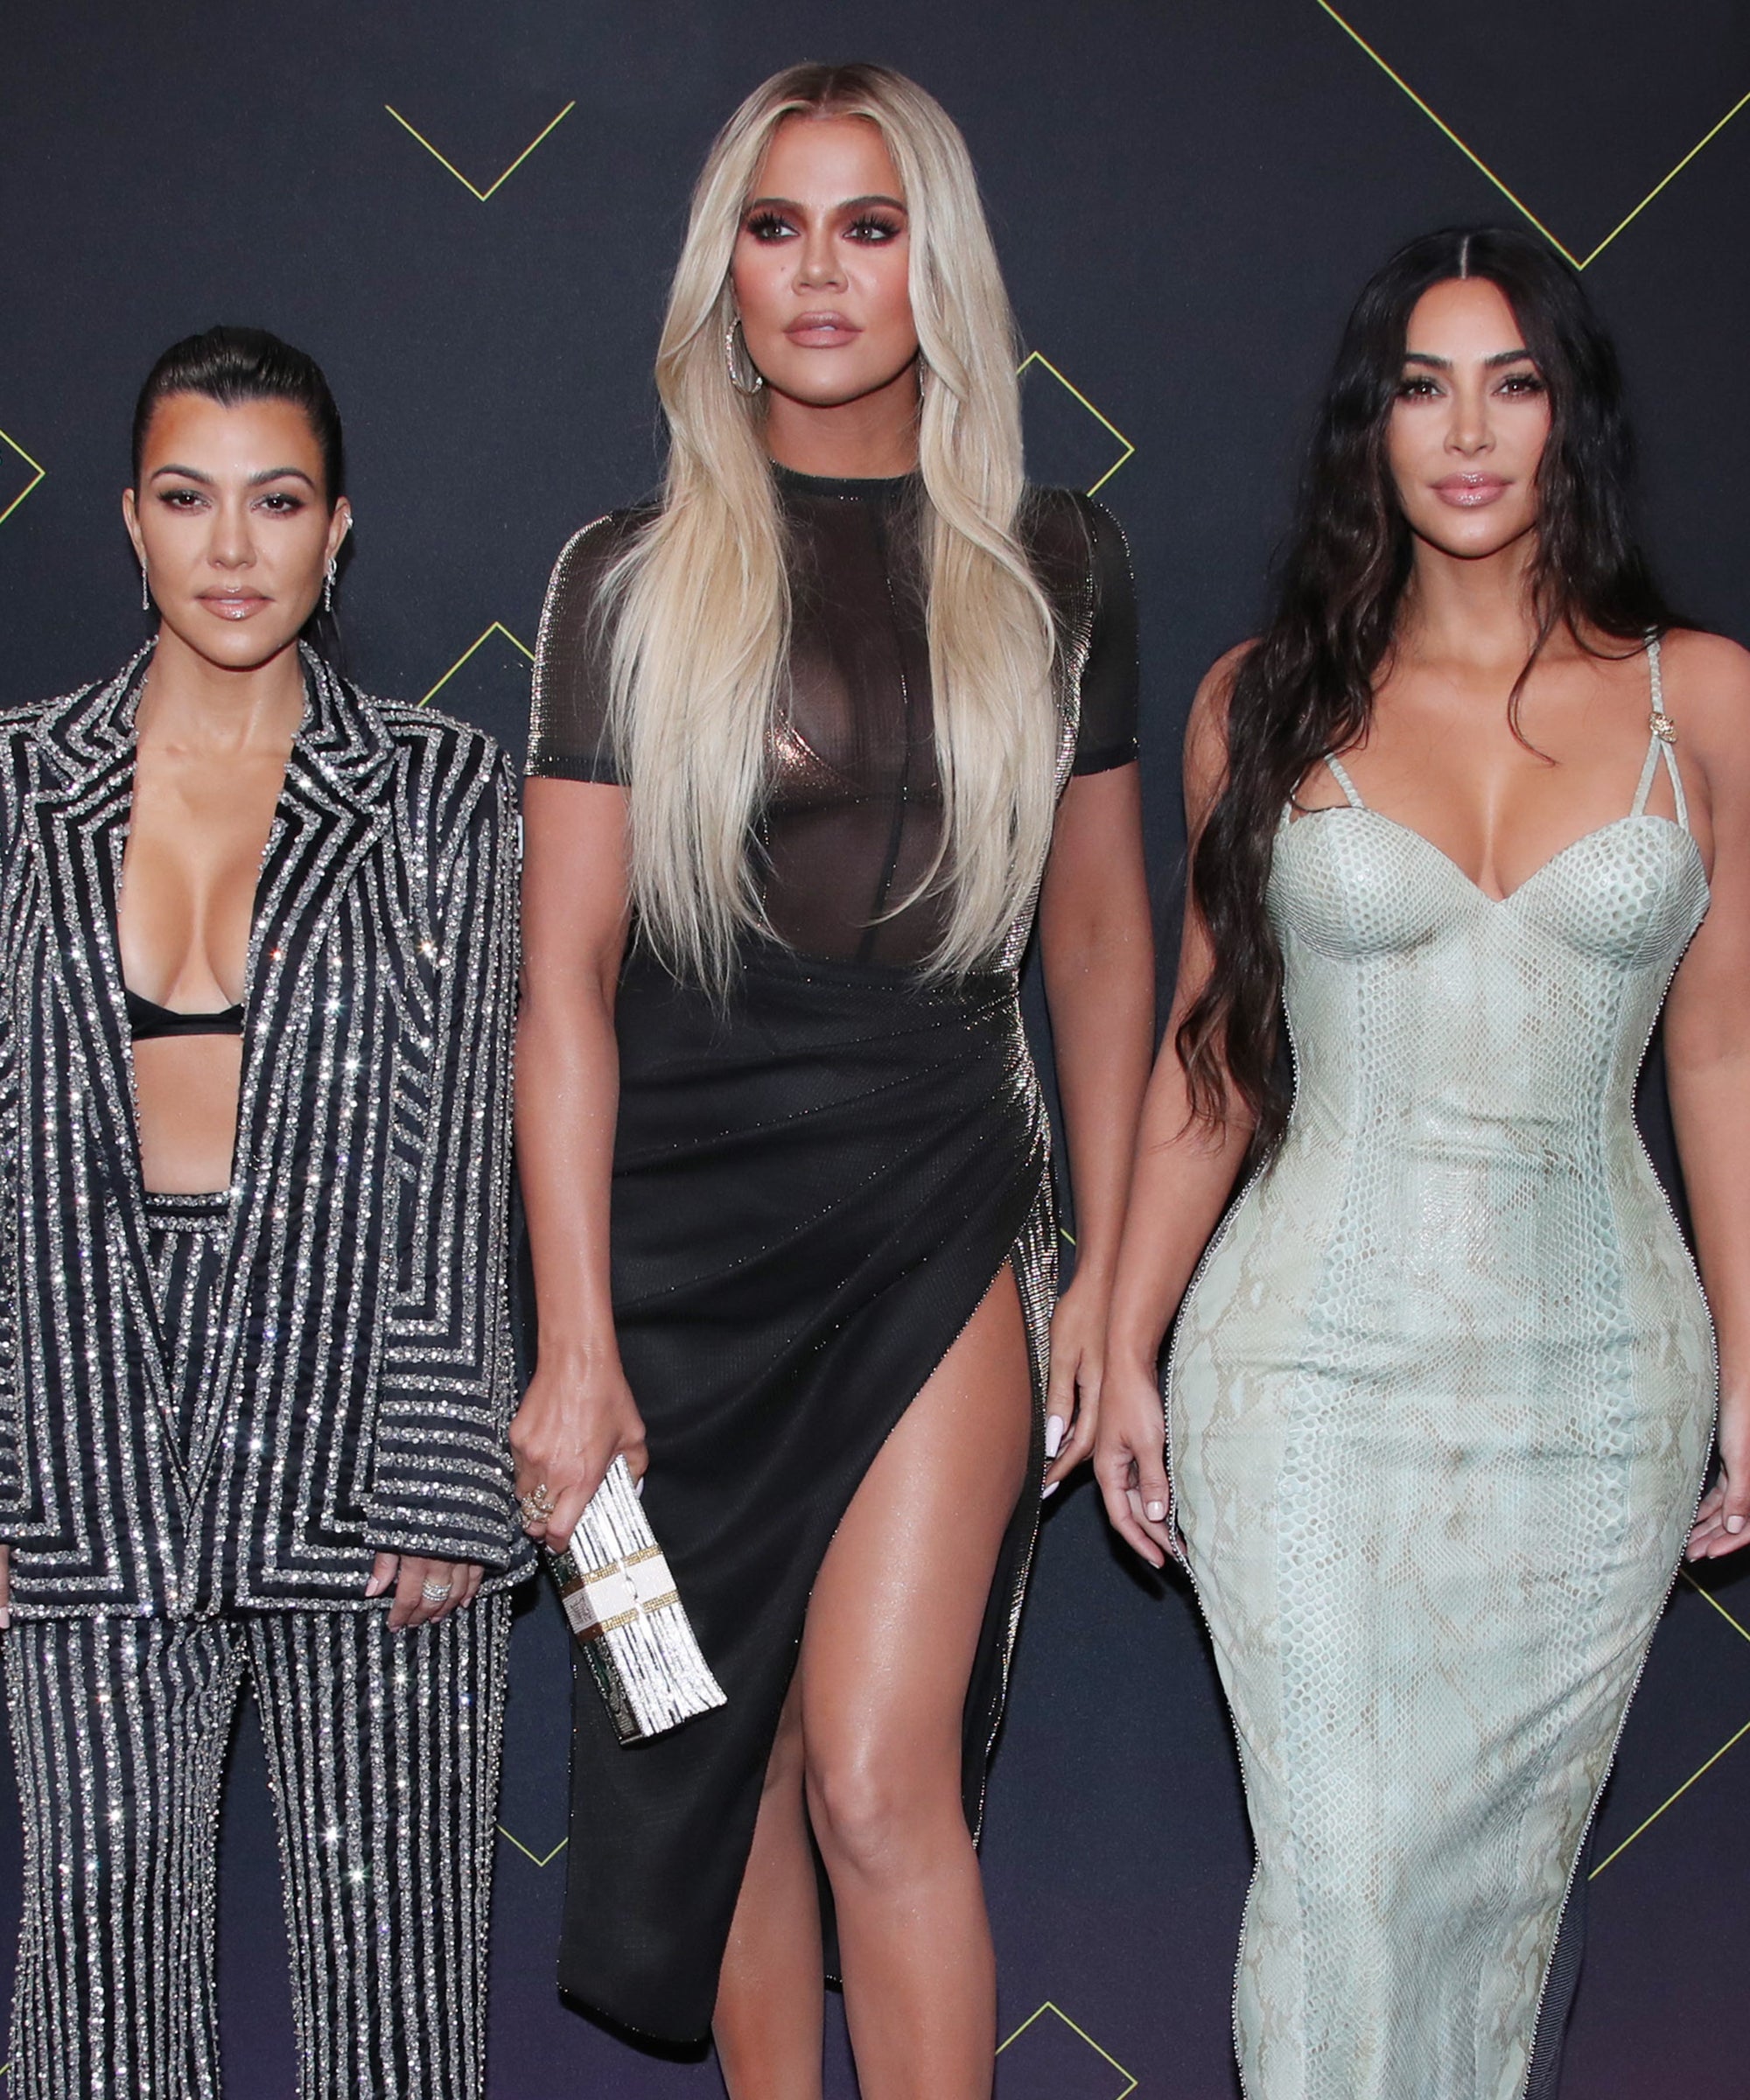 KUWTK Kim Kardashian Free McDonalds For Being Famous image